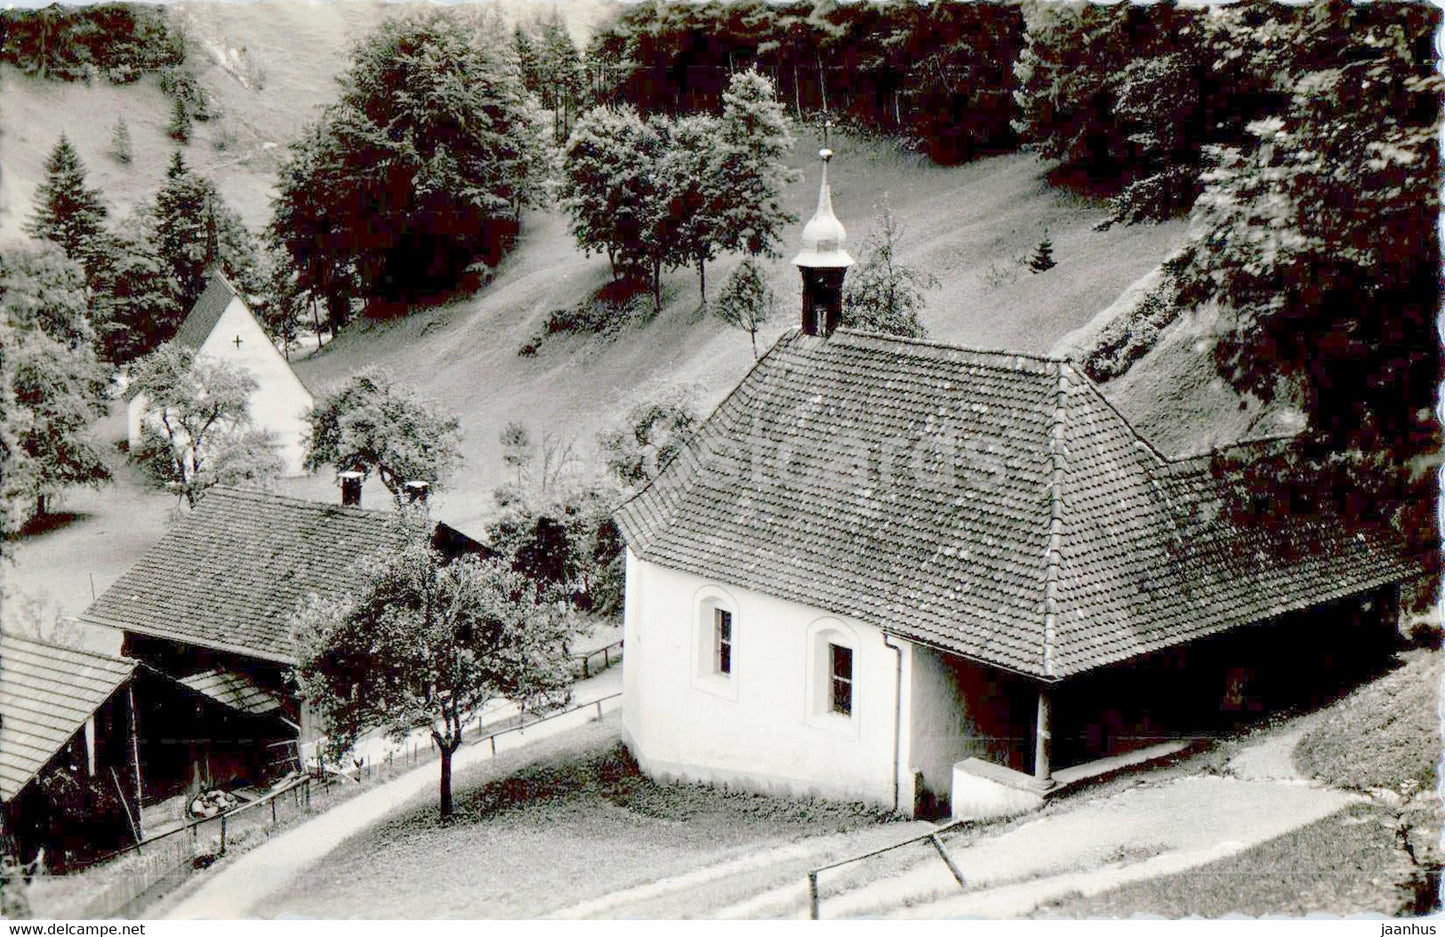 Flueli Ranft - Einsiedelei Niklaus v der Flue - 200 - old postcard - Switzerland - unused - JH Postcards